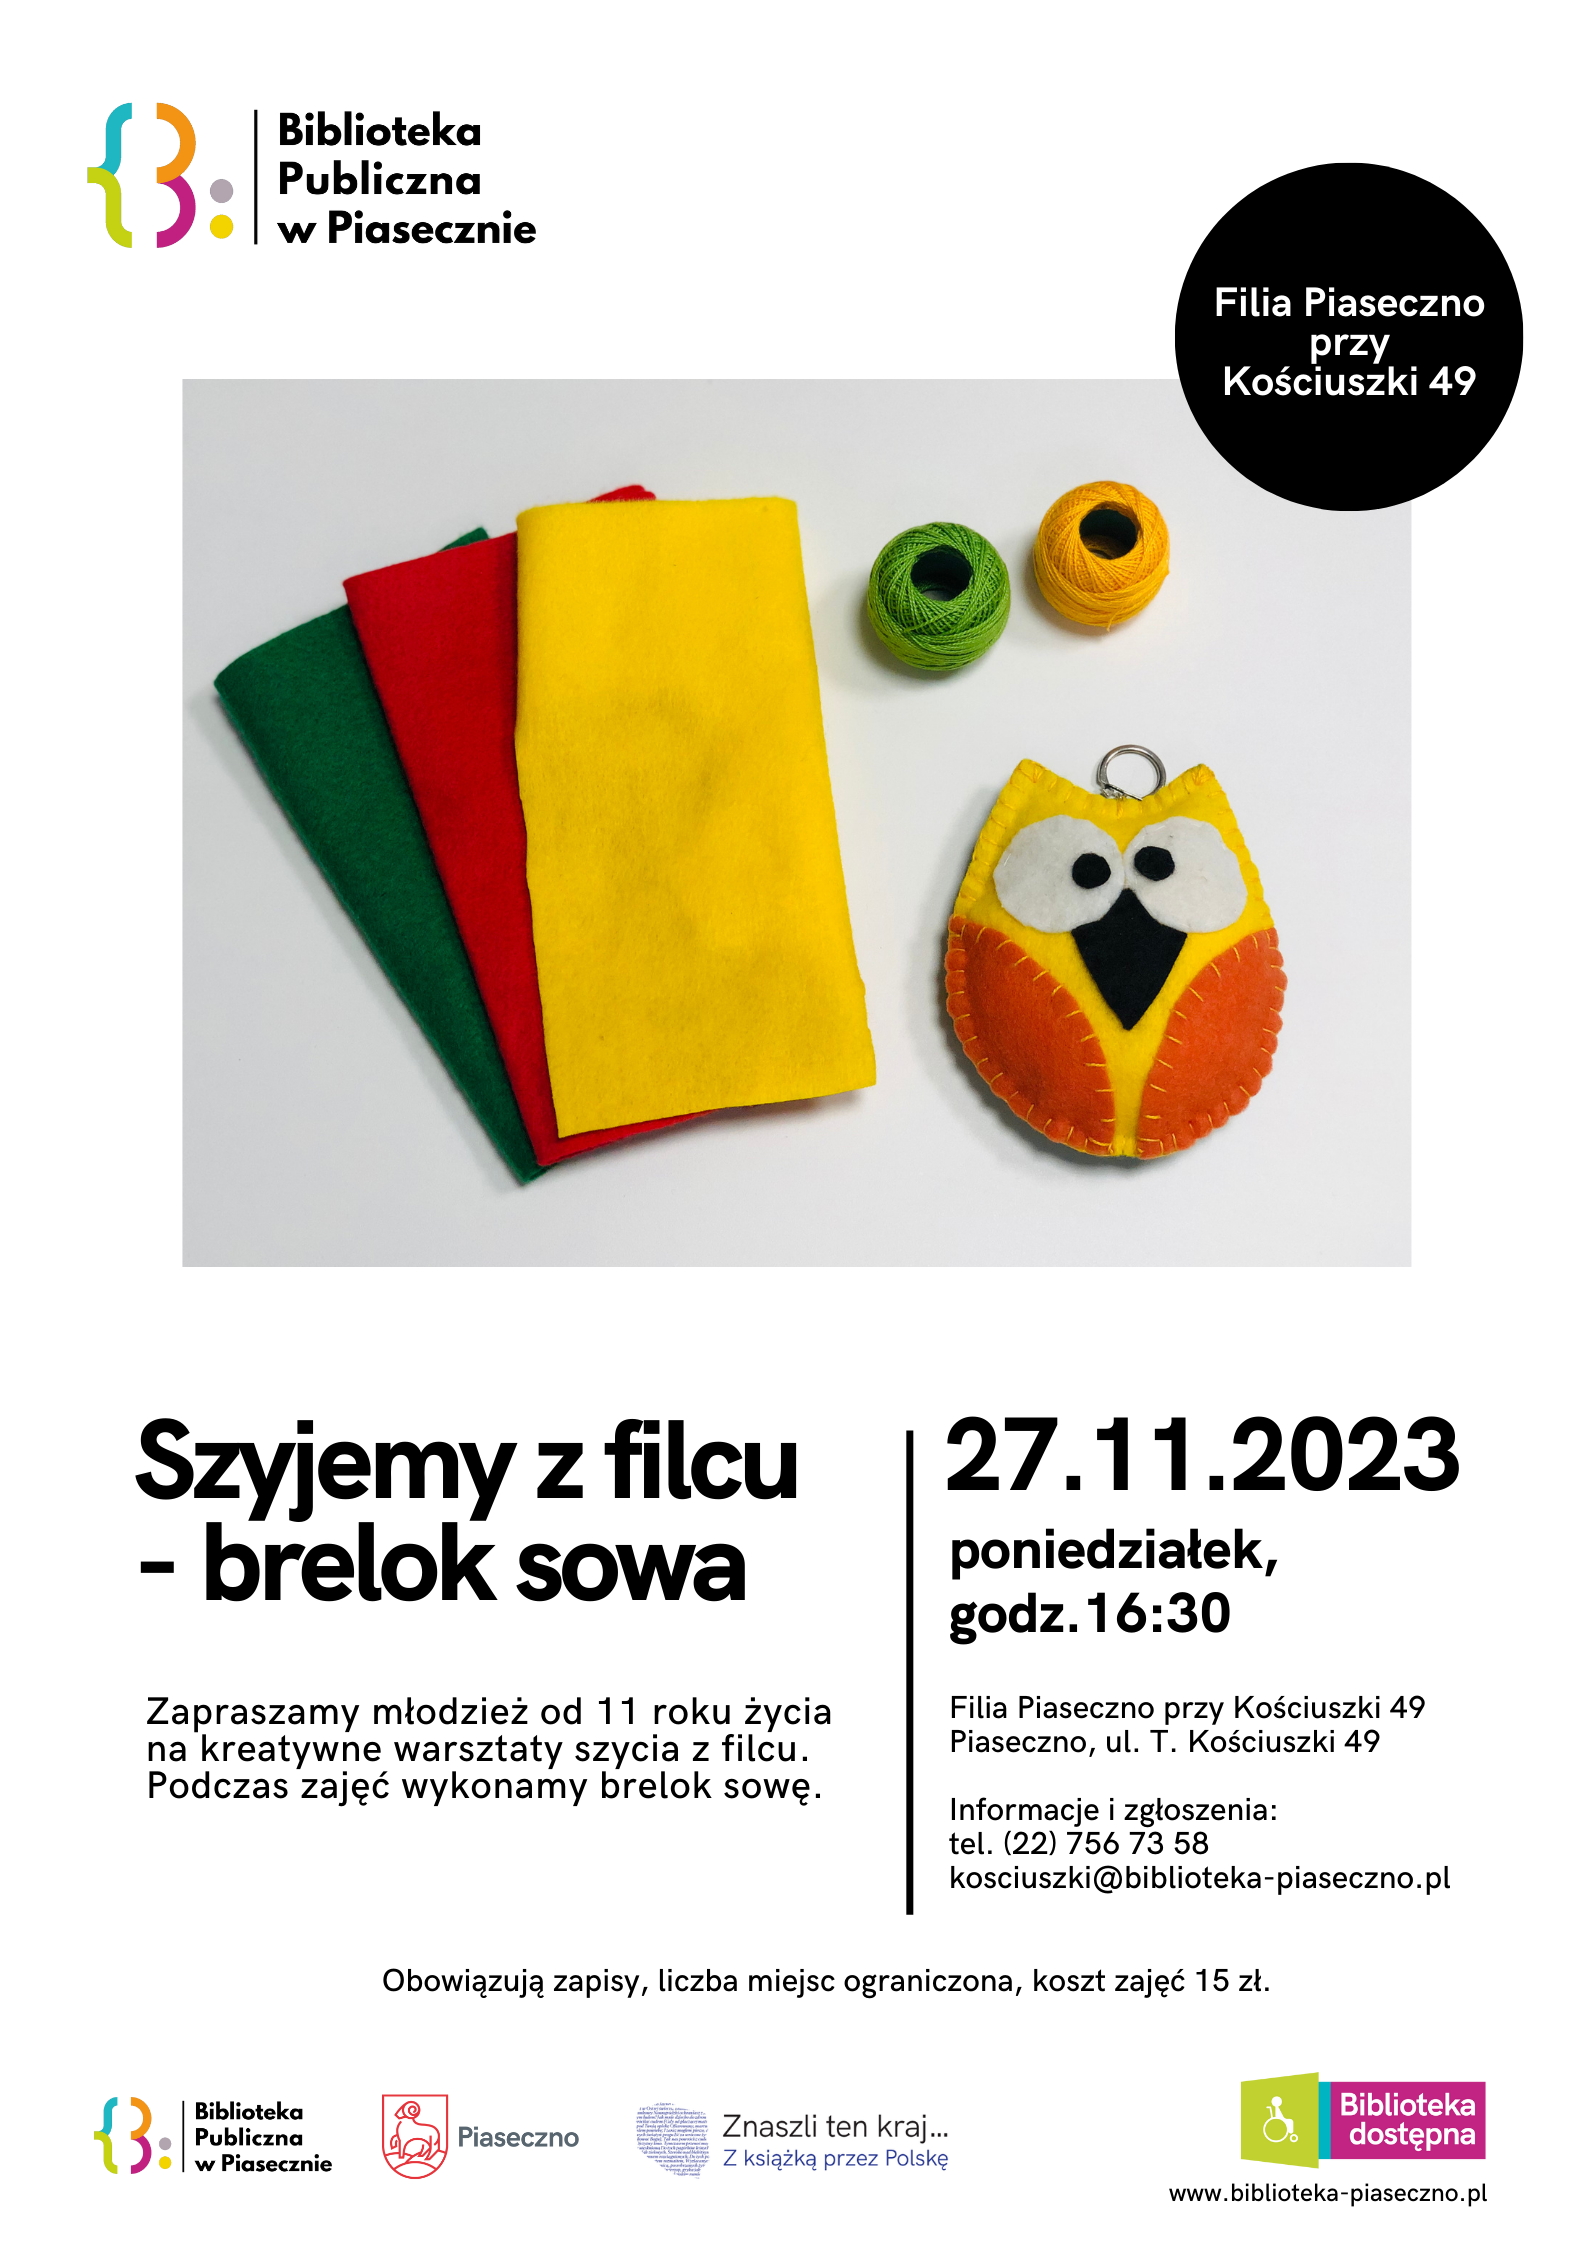 Plakat promujący warsztaty szycia z filcu - brelok sowa